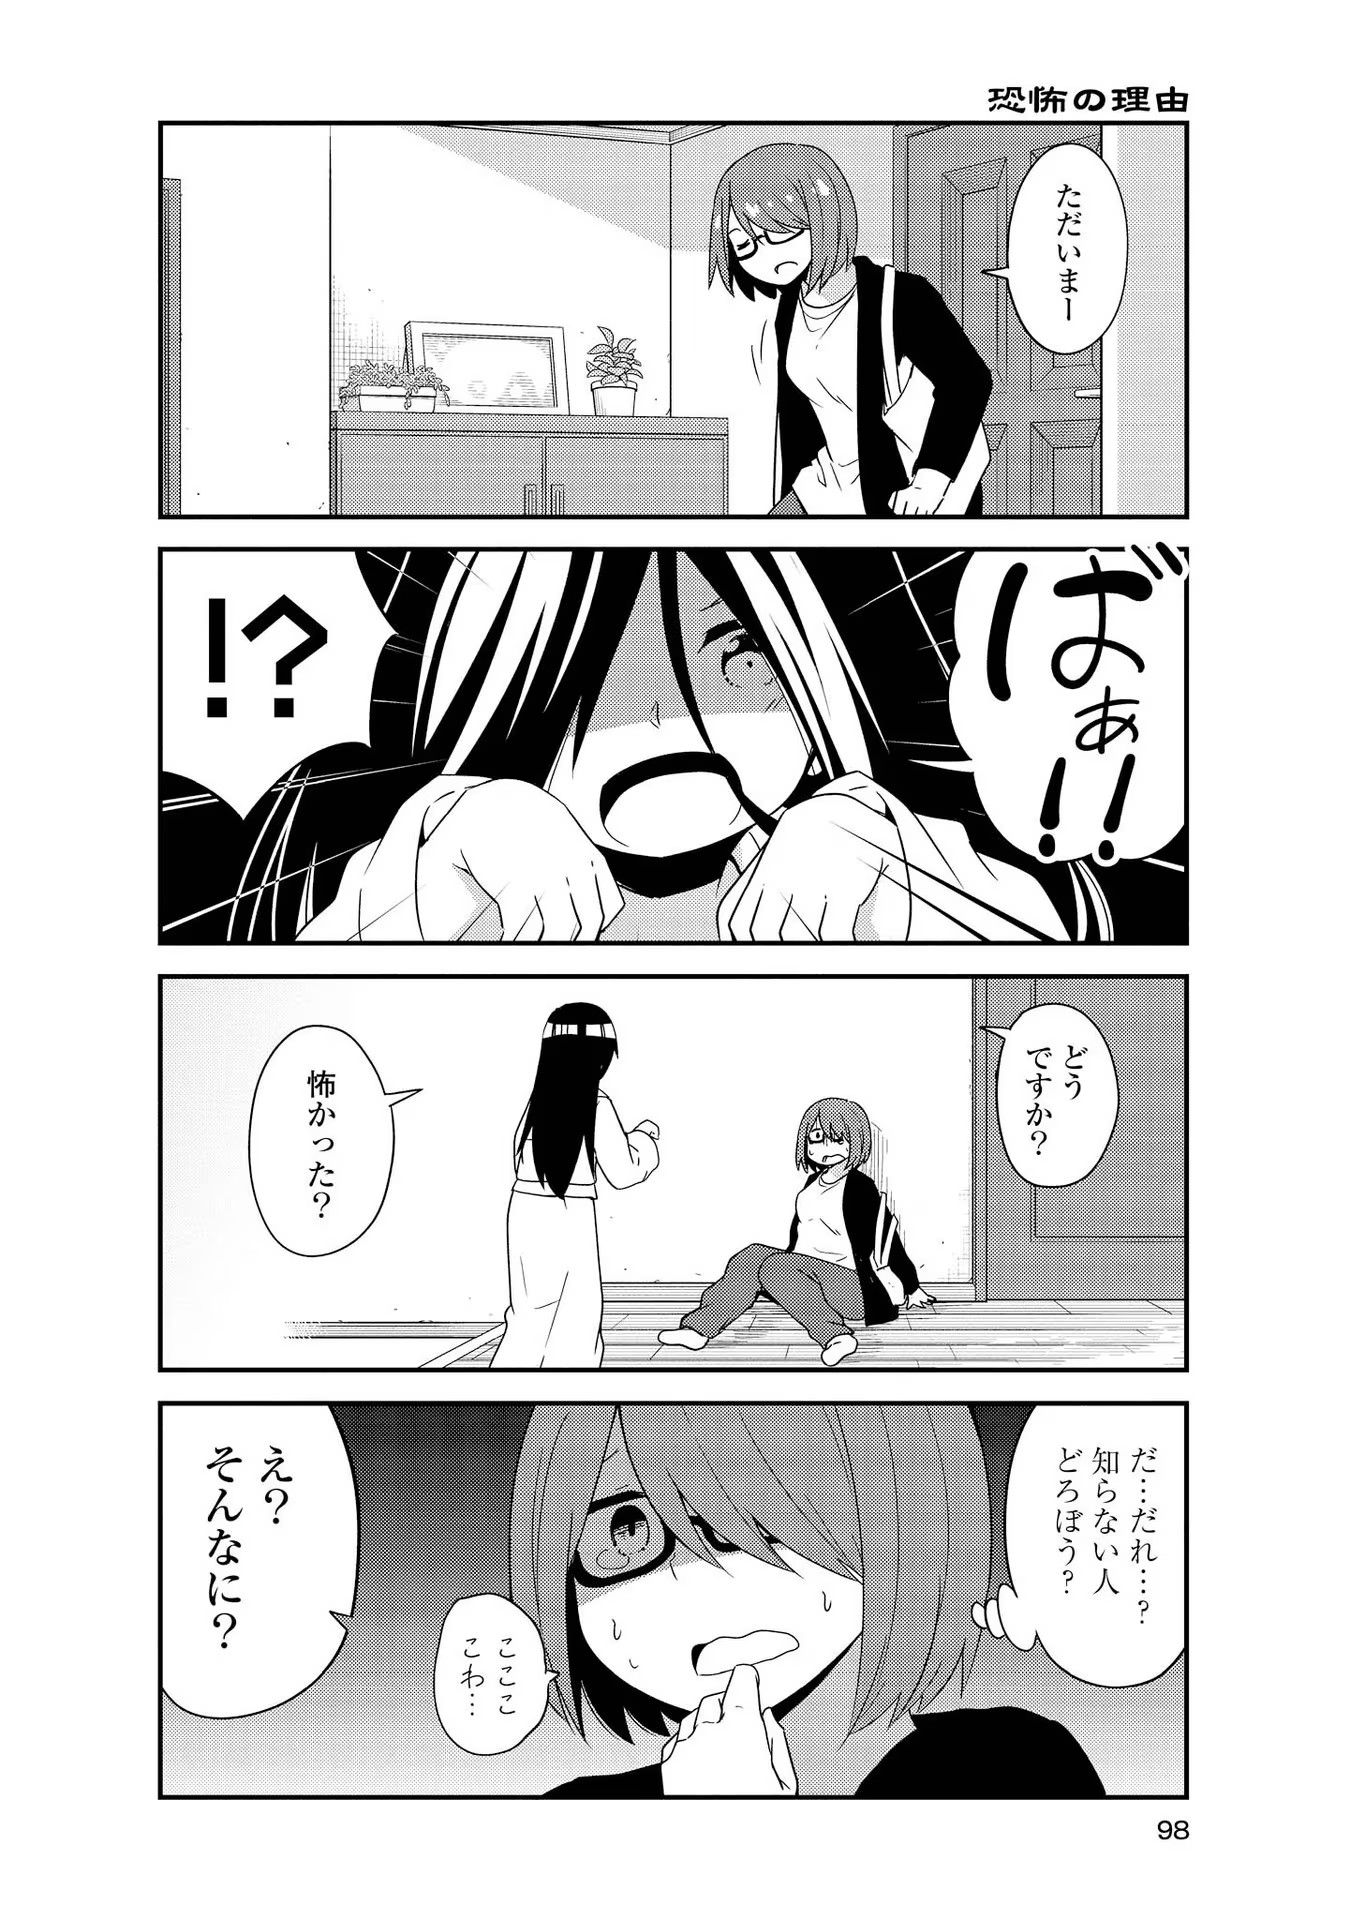 Watashi ni Tenshi ga Maiorita! - Chapter 34.5 - Page 2